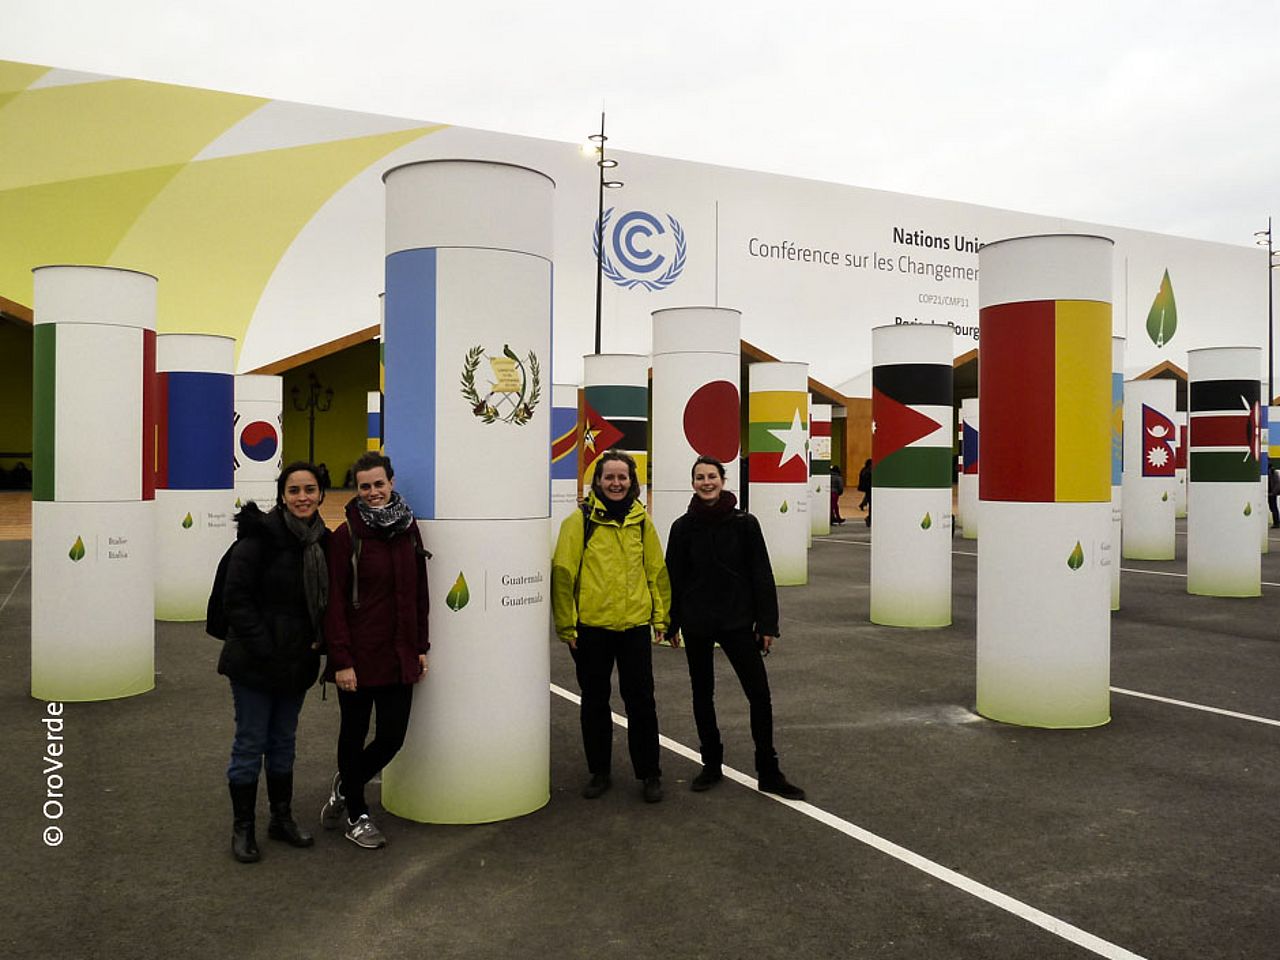 Wie hier auf der Klimakonferenz COP21 werden vielfältige Meinungen, Positionen und Partnerschaften immer wichtiger, um Lösungen für globale Probleme zu finden. ©OroVerde